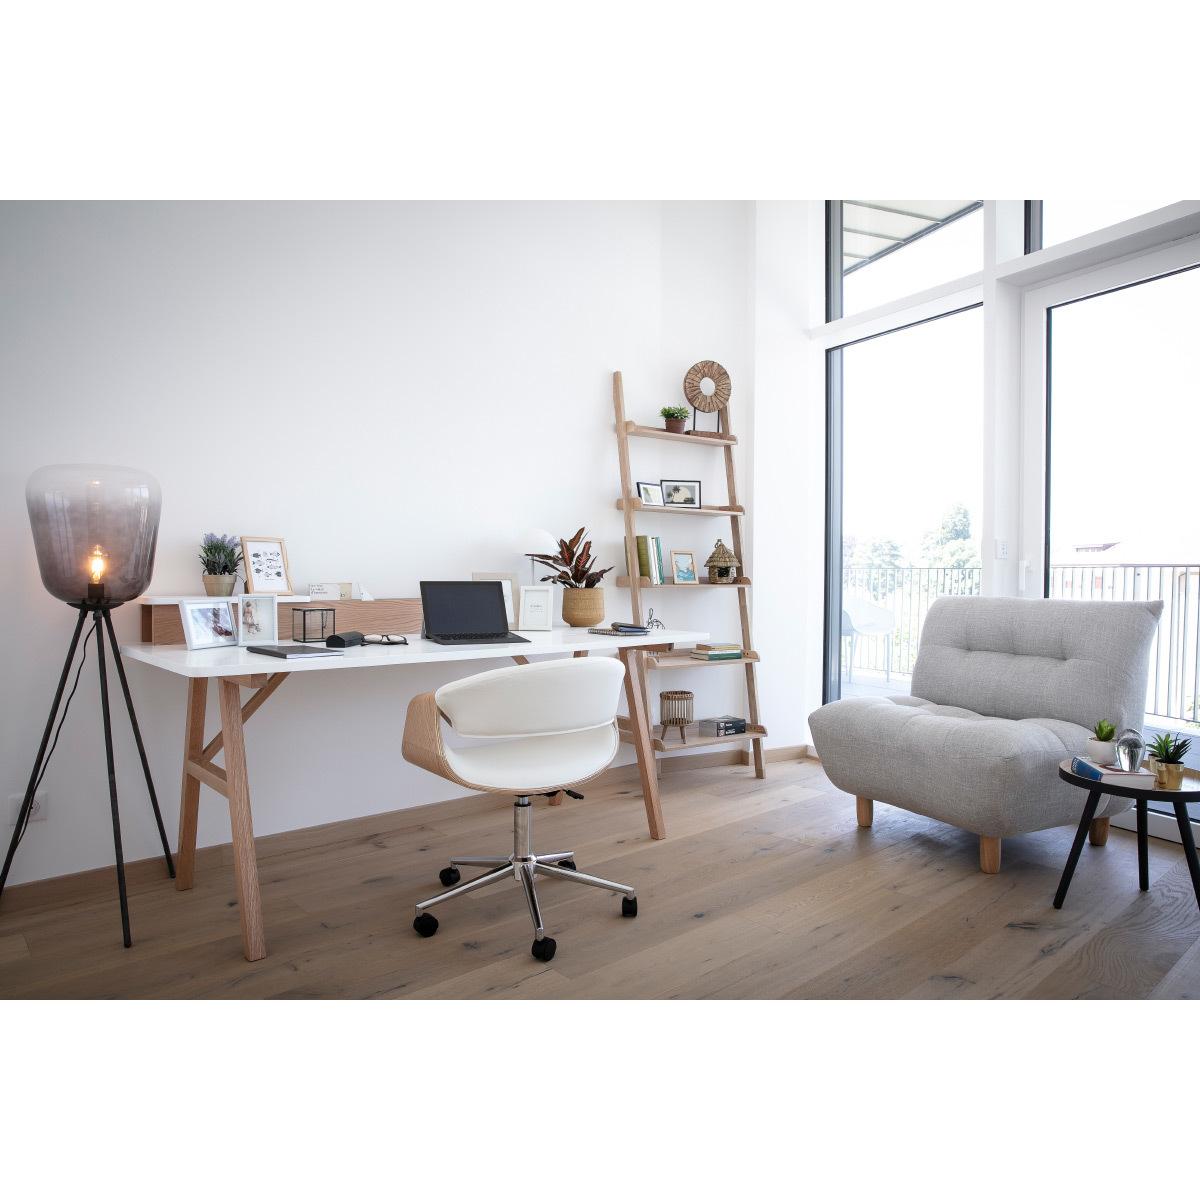 Miliboo - Chaise de bureau à roulettes design blanc, bois clair et